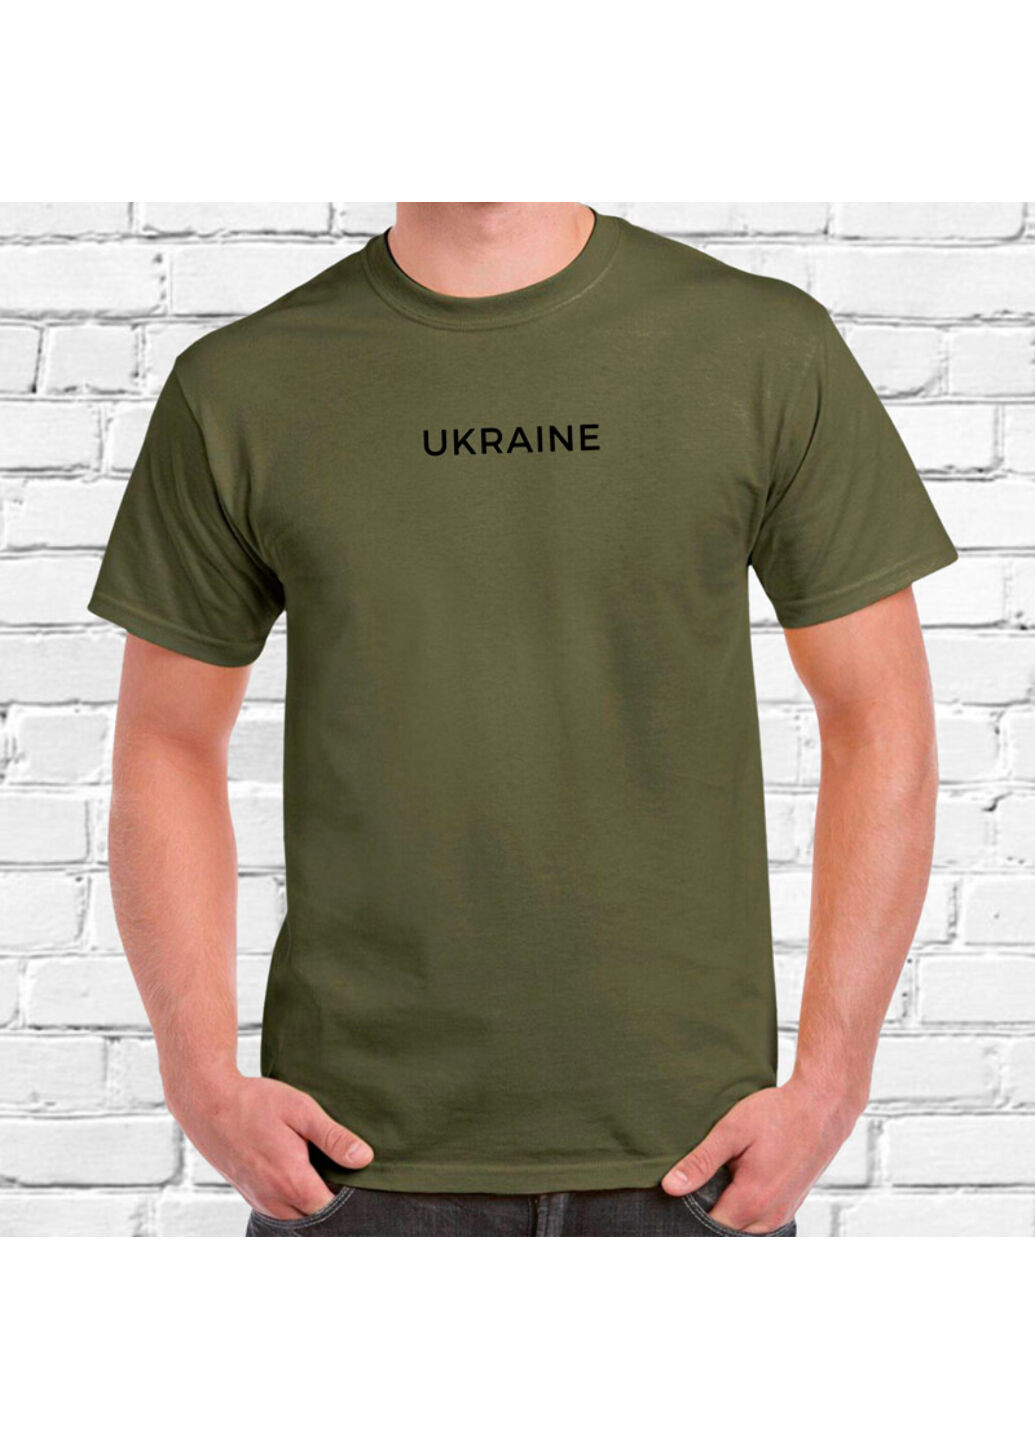 Хакі (оливкова) футболка з вишивкою ukraine чоловіча millytary green 2xl No Brand